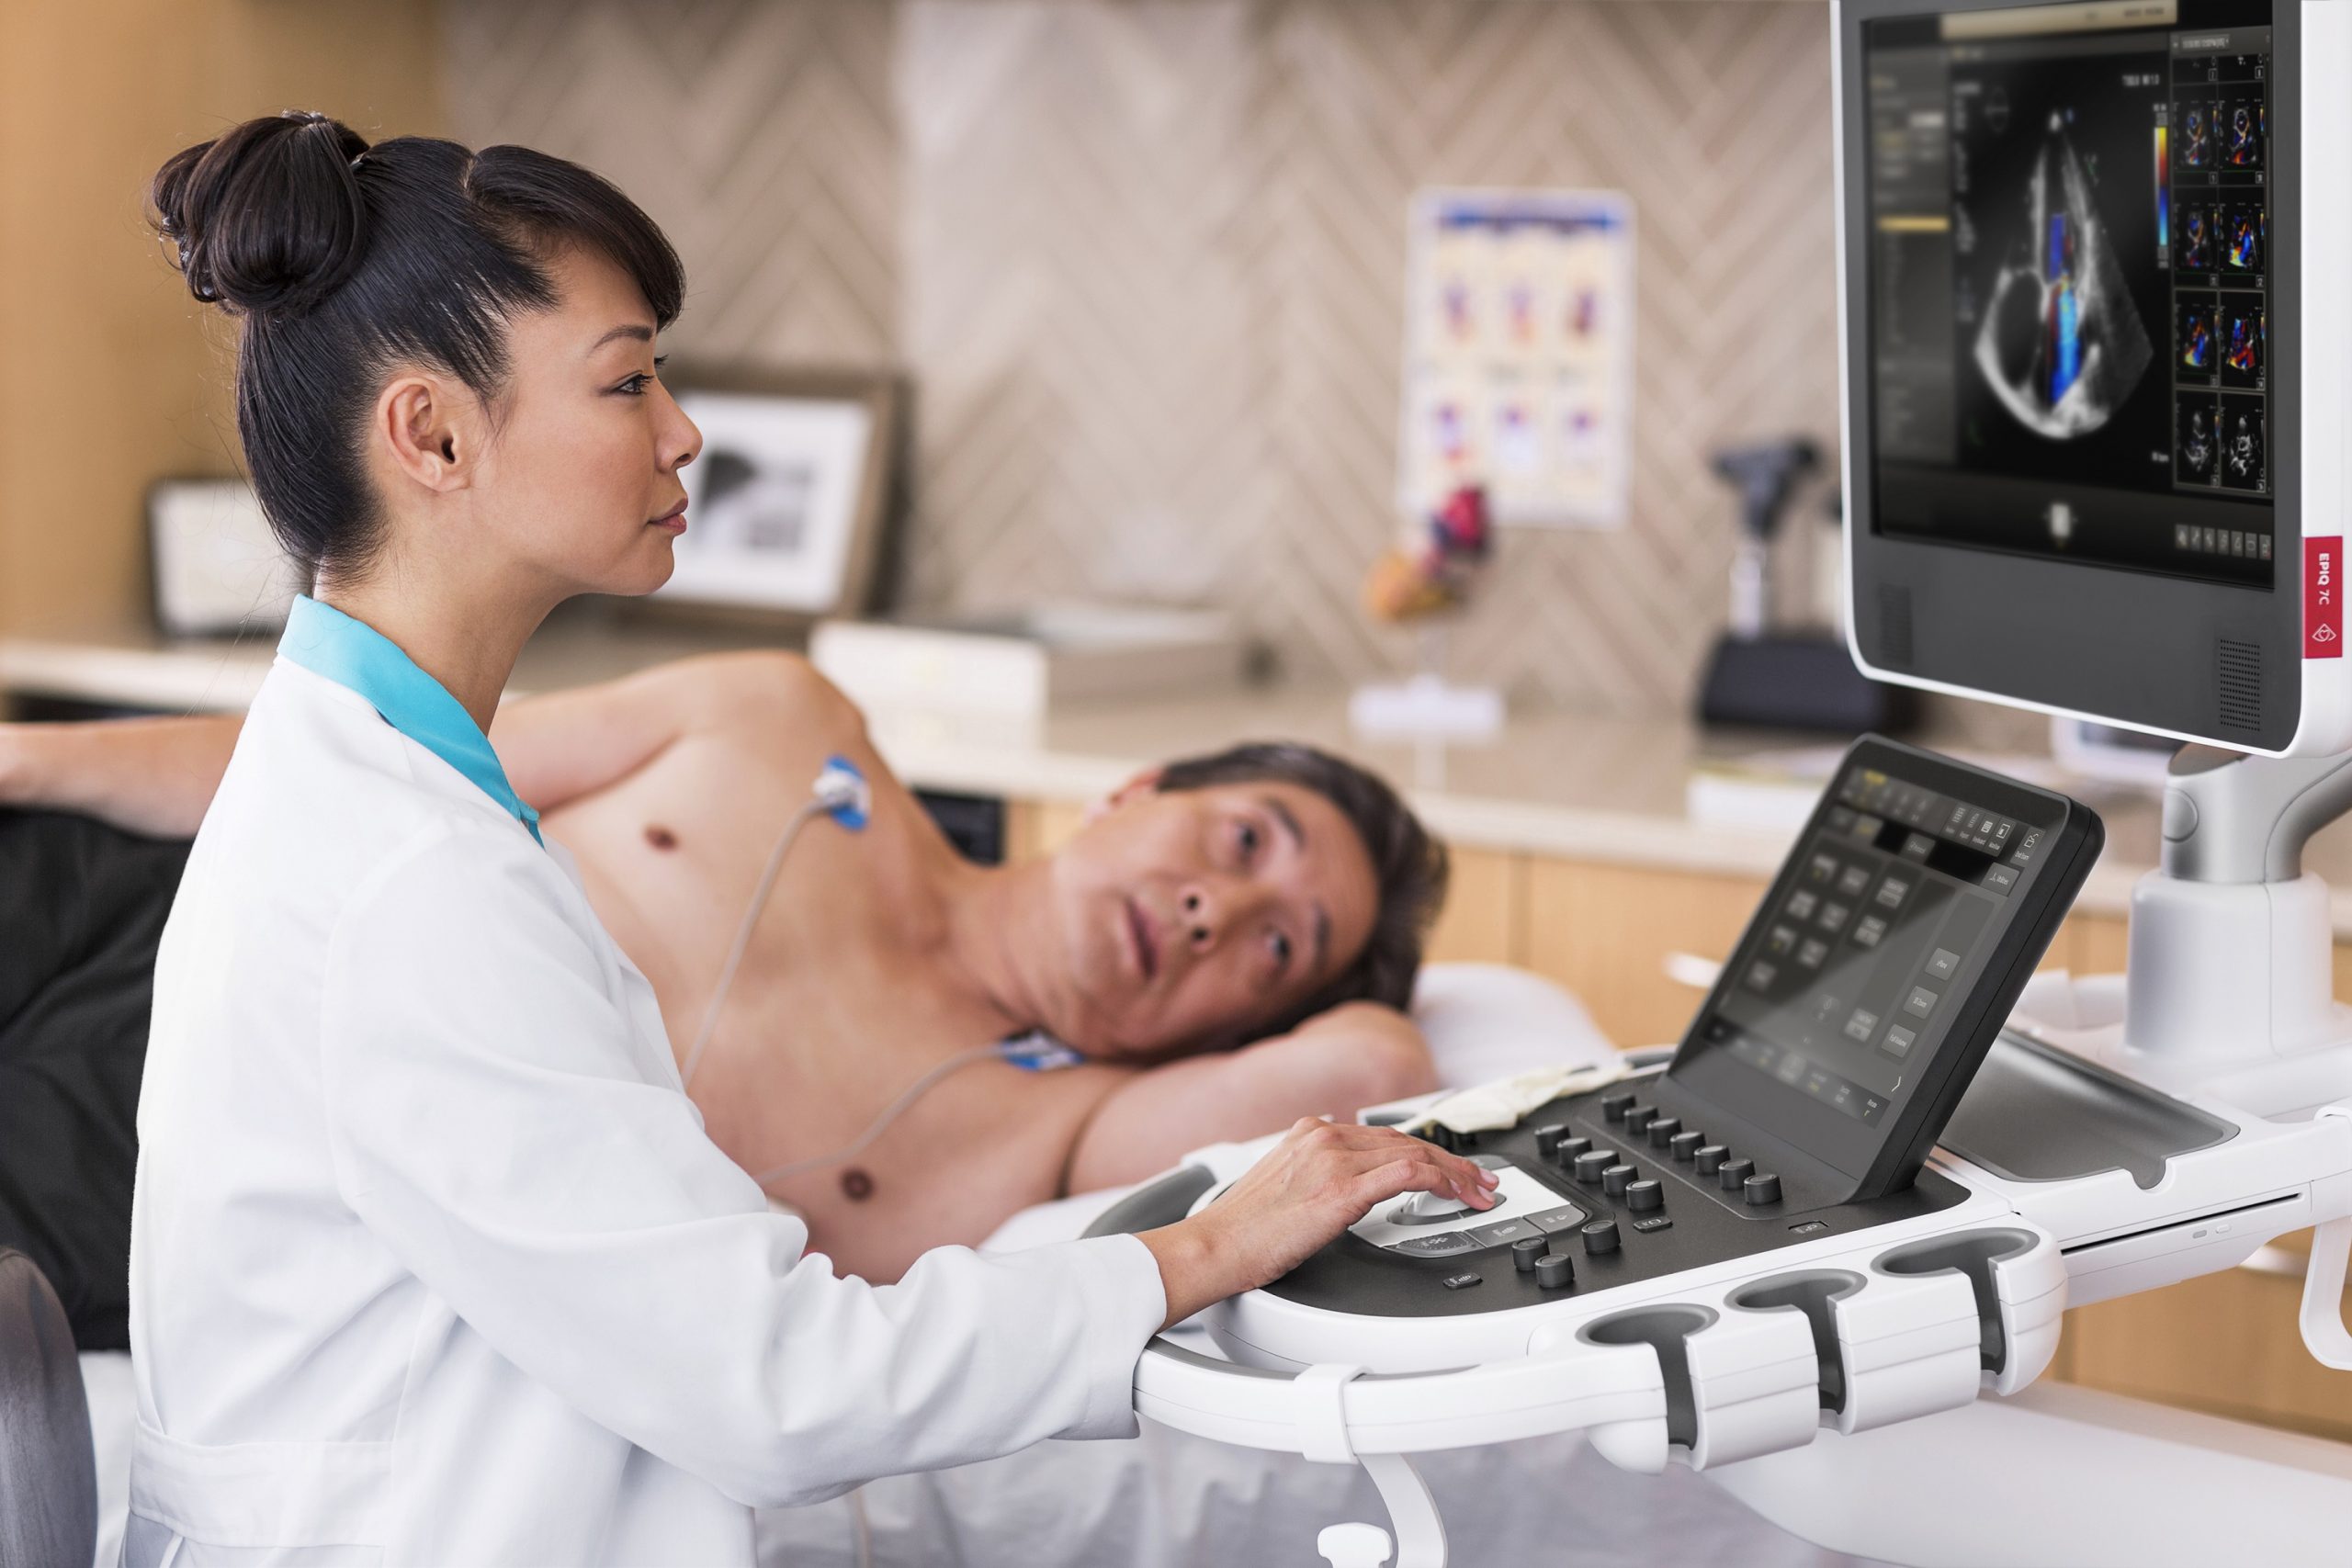 องค์การอาหารและยาแห่งสหรัฐอเมริกา อนุมัติให้ Philips Ultrasound ใช้ในการวินิจฉัยและติดตามอาการทางปอดและหัวใจในผู้ป่วยโควิด-19